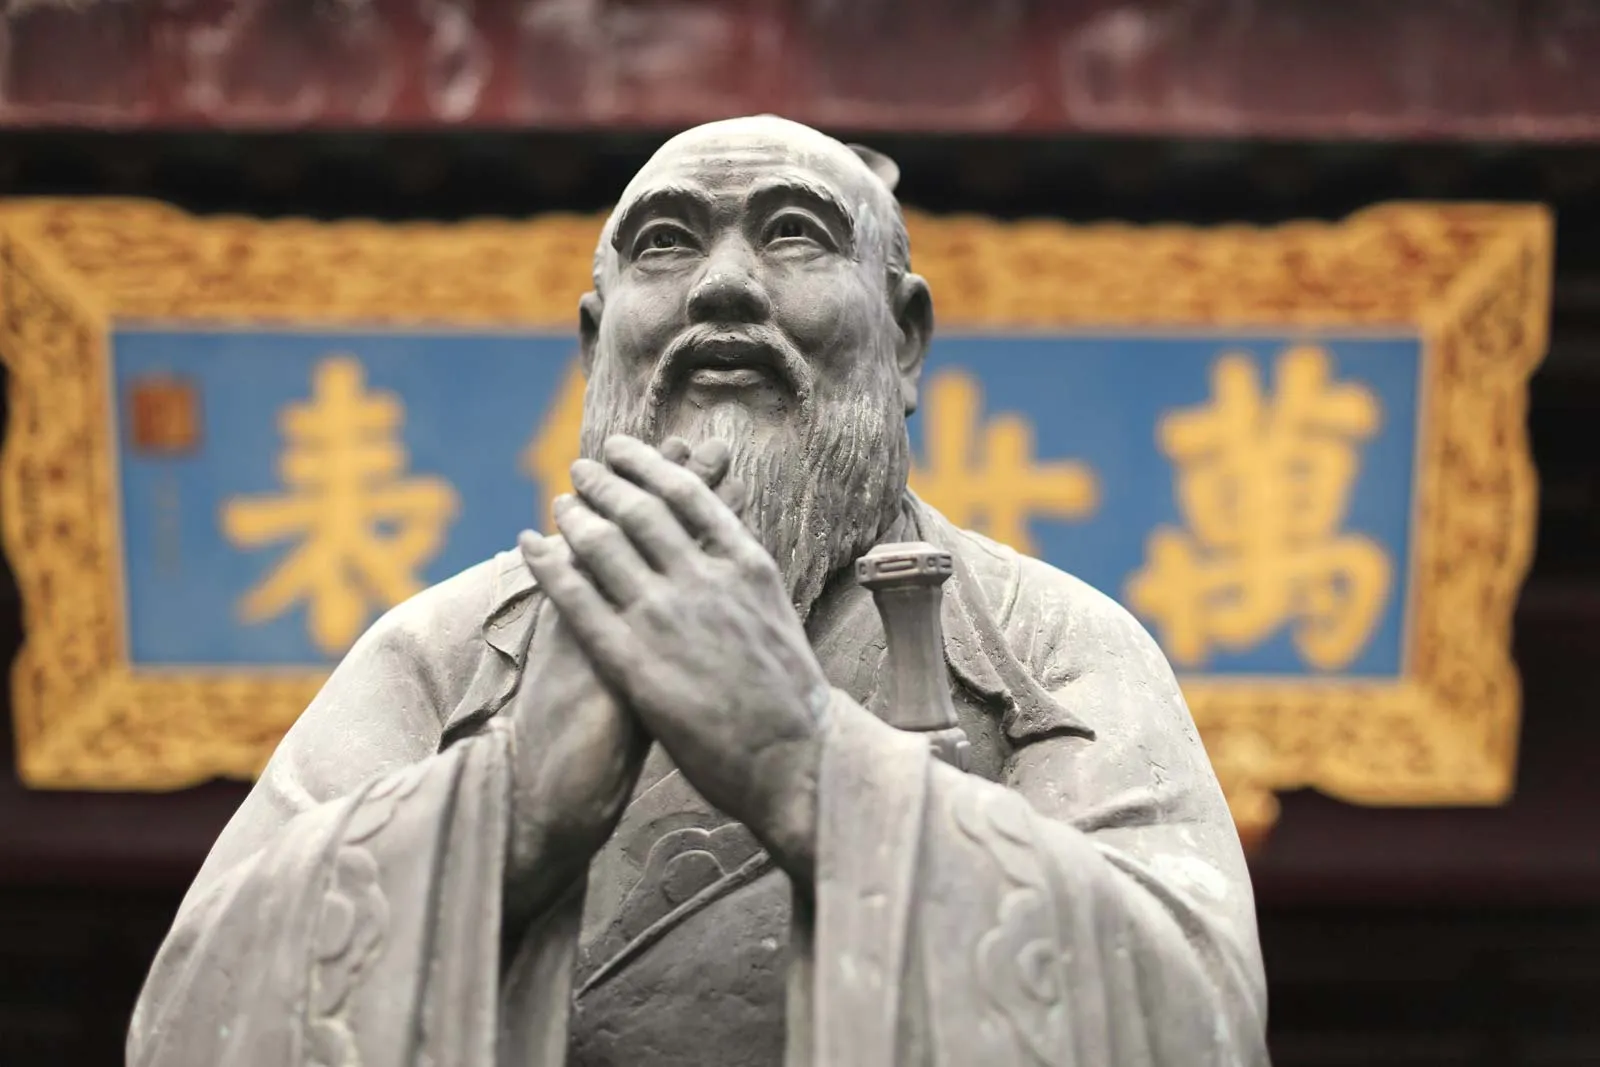 Image of Confucius